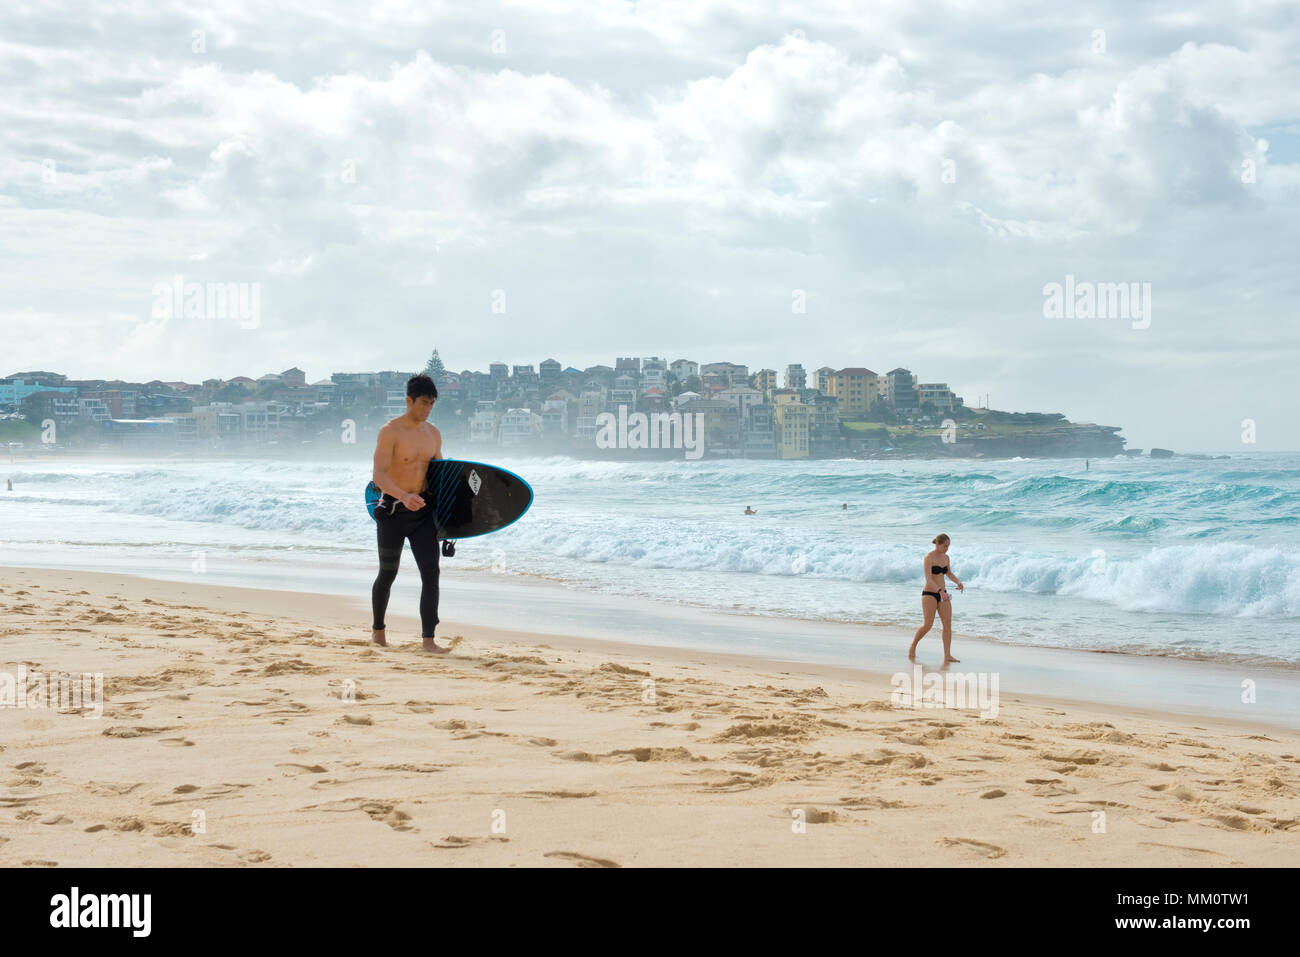 Surfer with board and woman in bikini strolling on Bondi beach Stock Photo